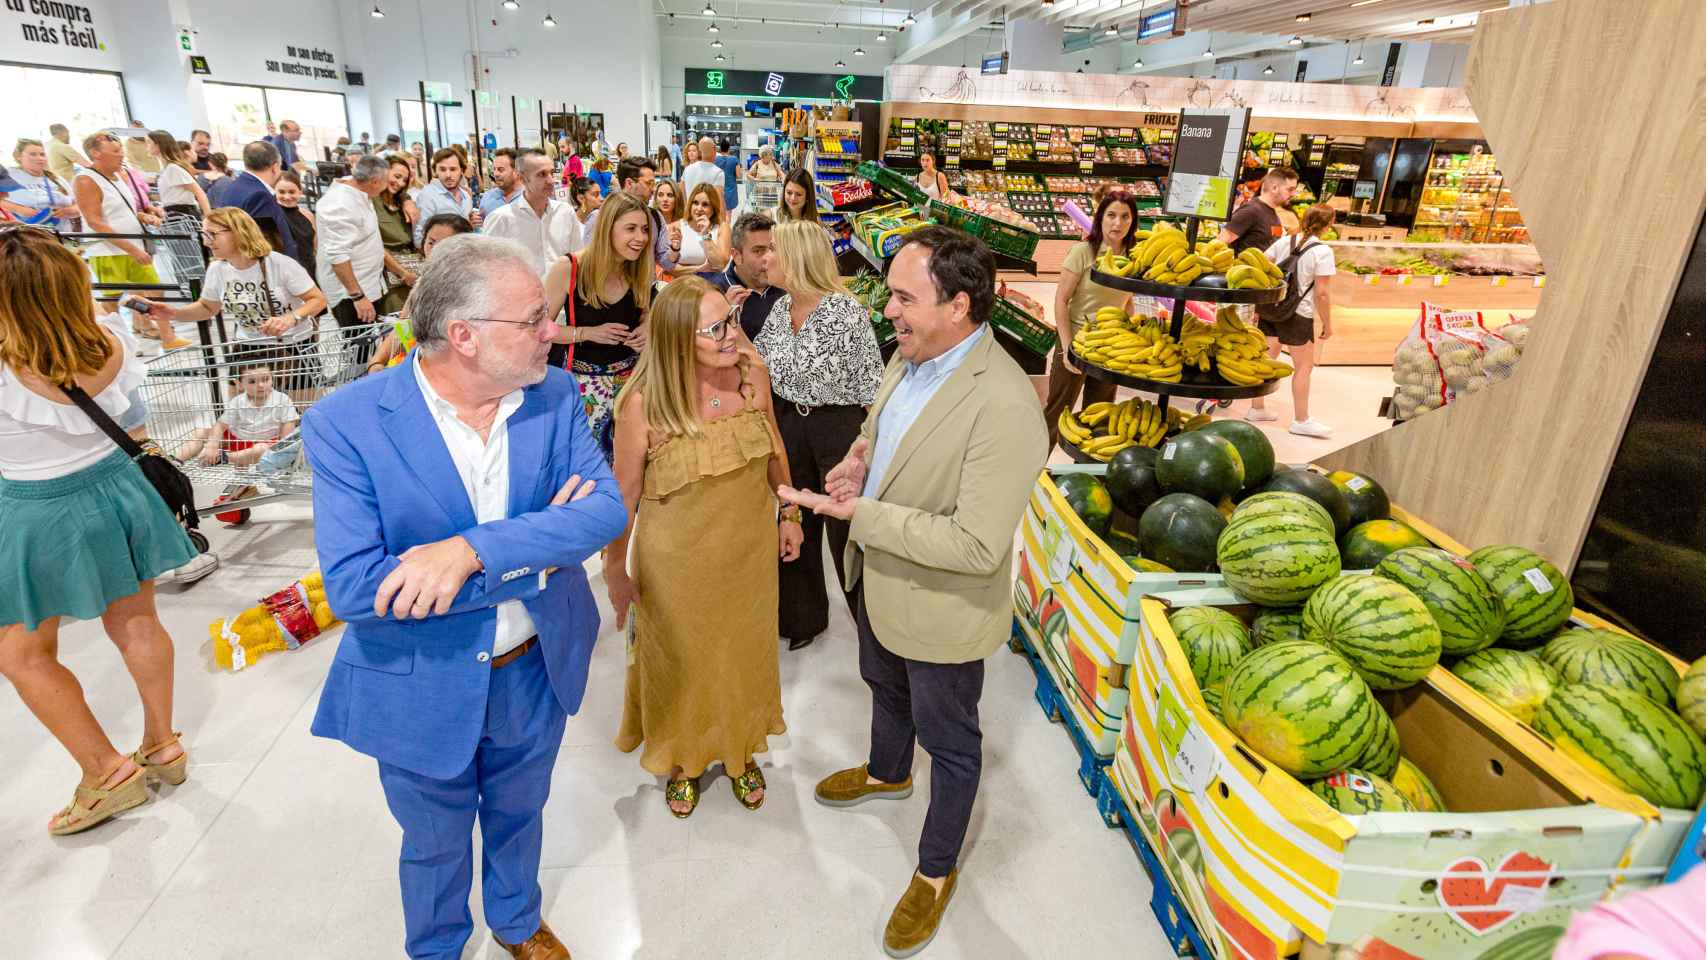 El matrimonio fundador de Family Cash, José Canet, con traje azul, y Rosa María Ferrero, con vestido color mostaza, enseñando un supermercado.